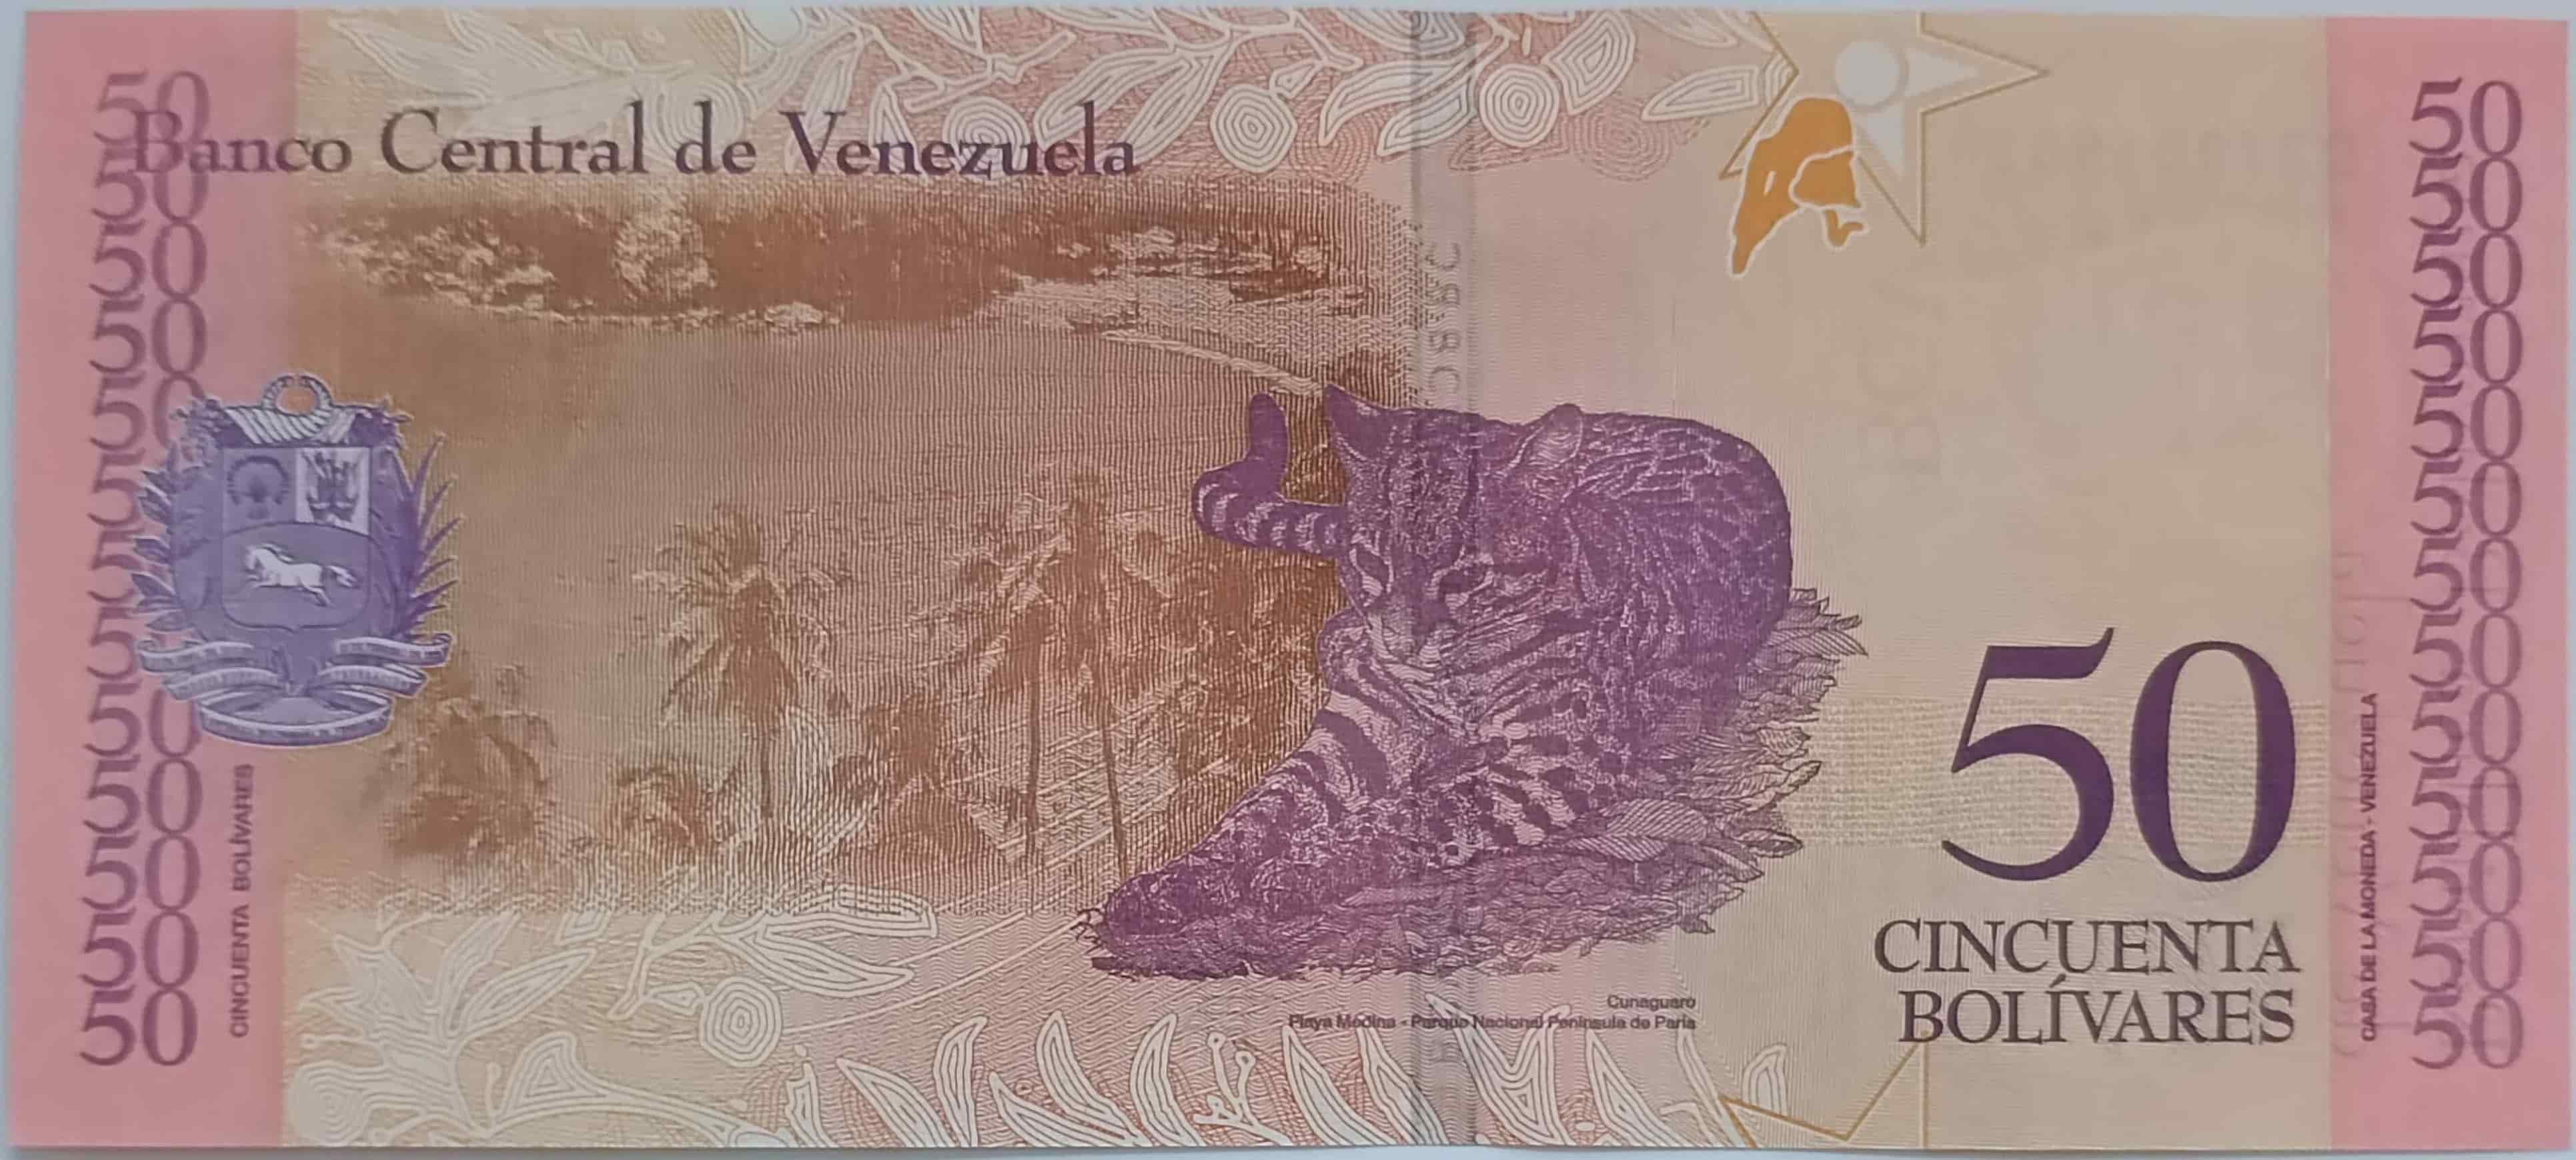 50 Bolivares 2018 Venezuela